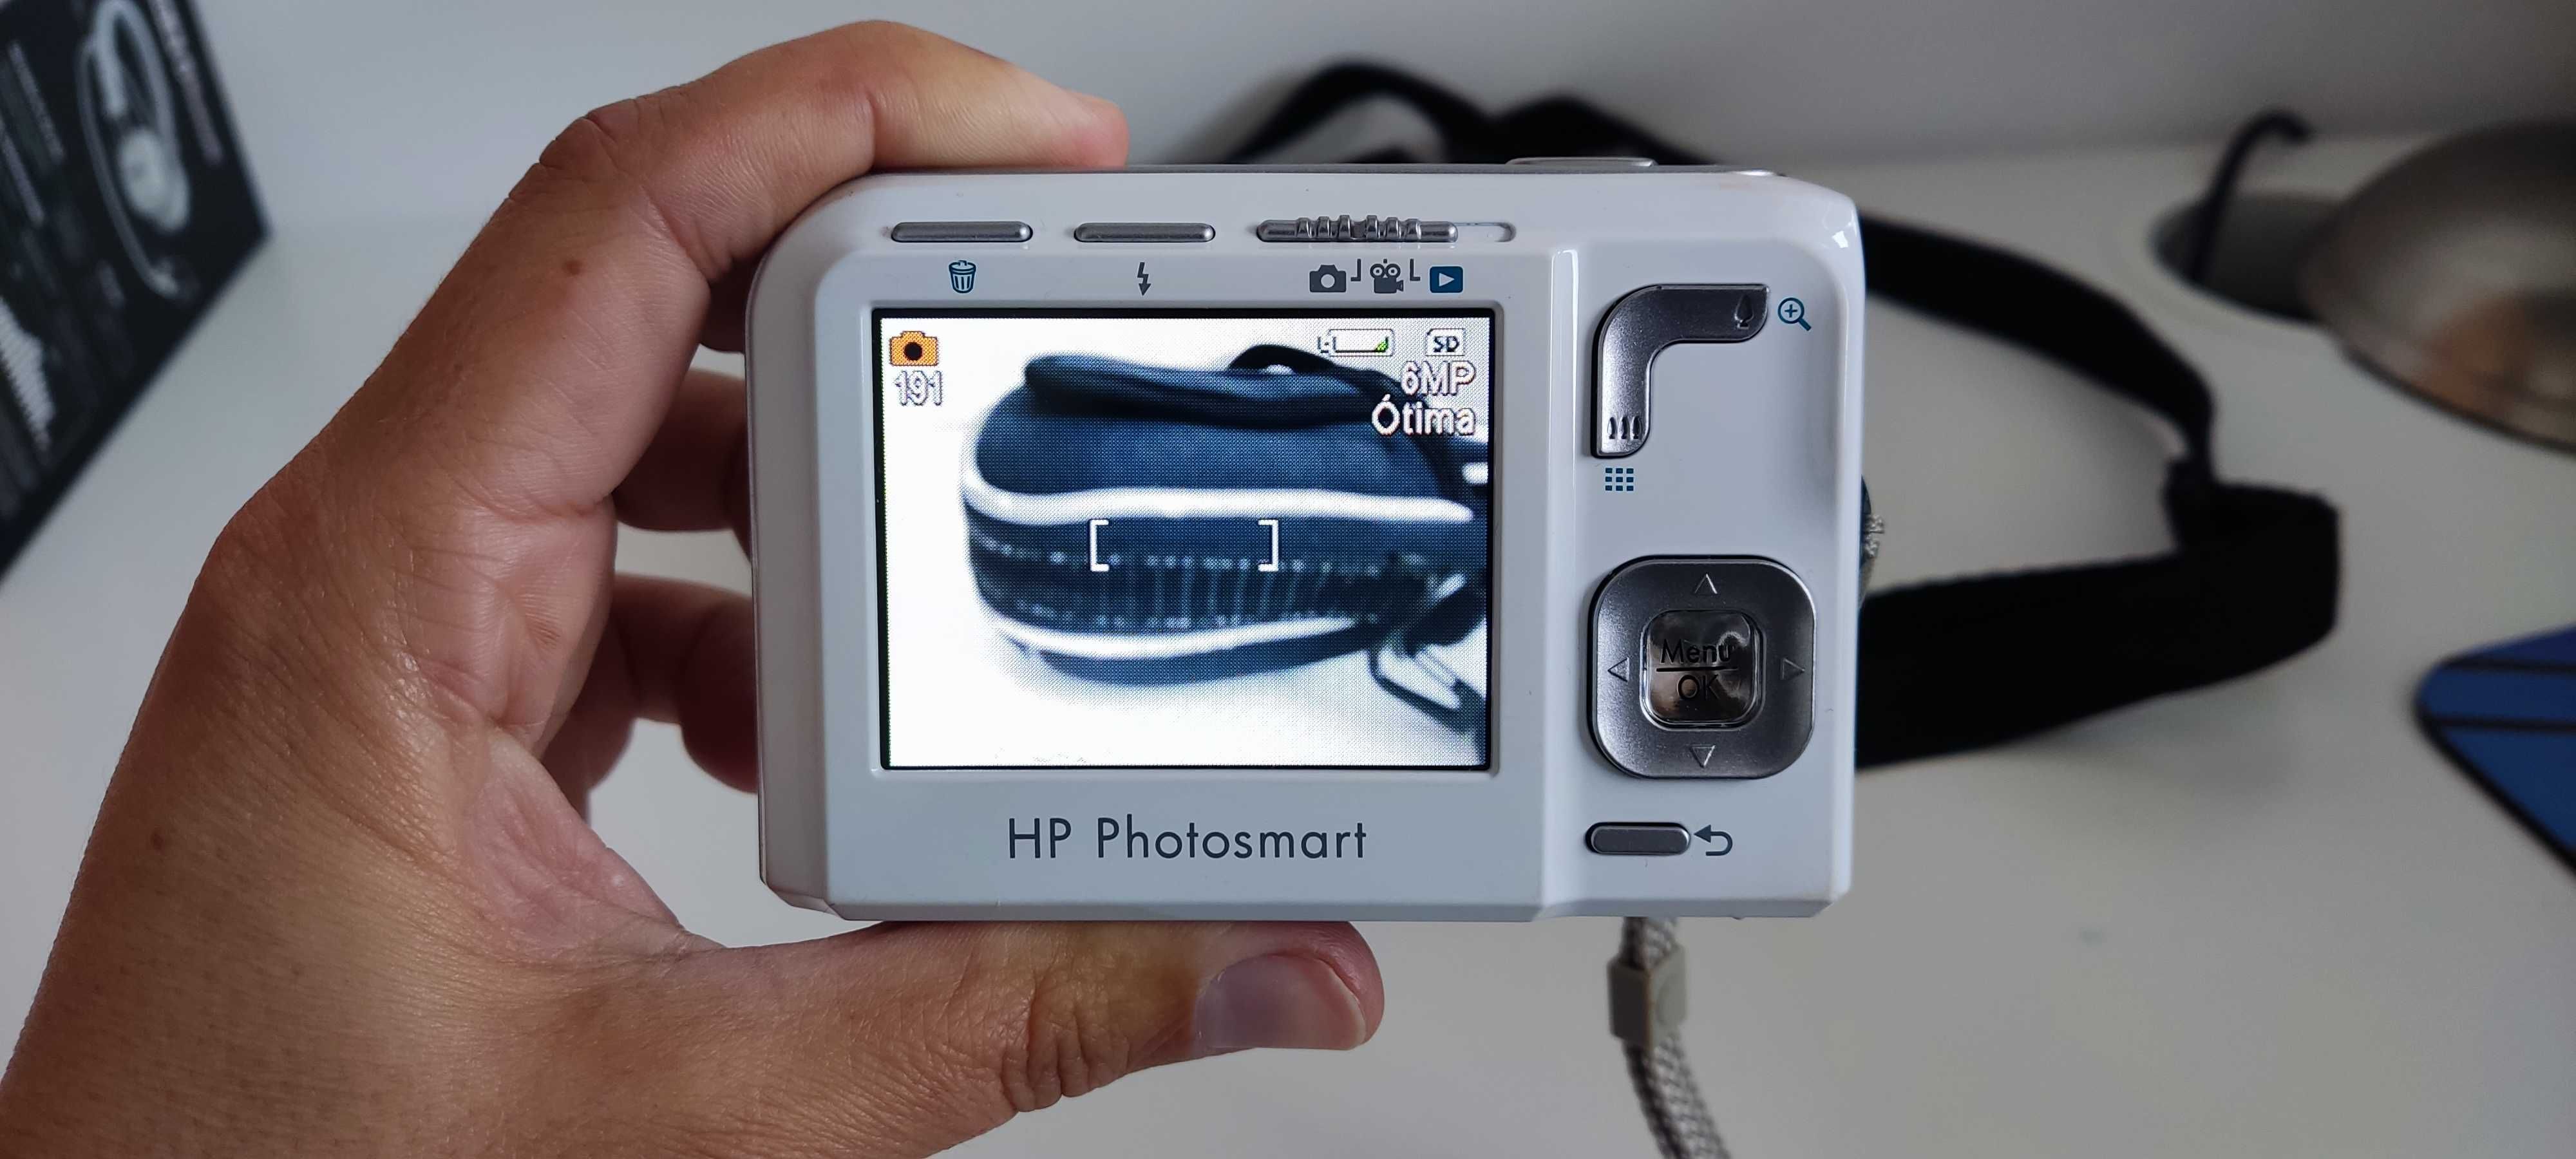 Máquina fotográfica HP, bolsa e cartão memória